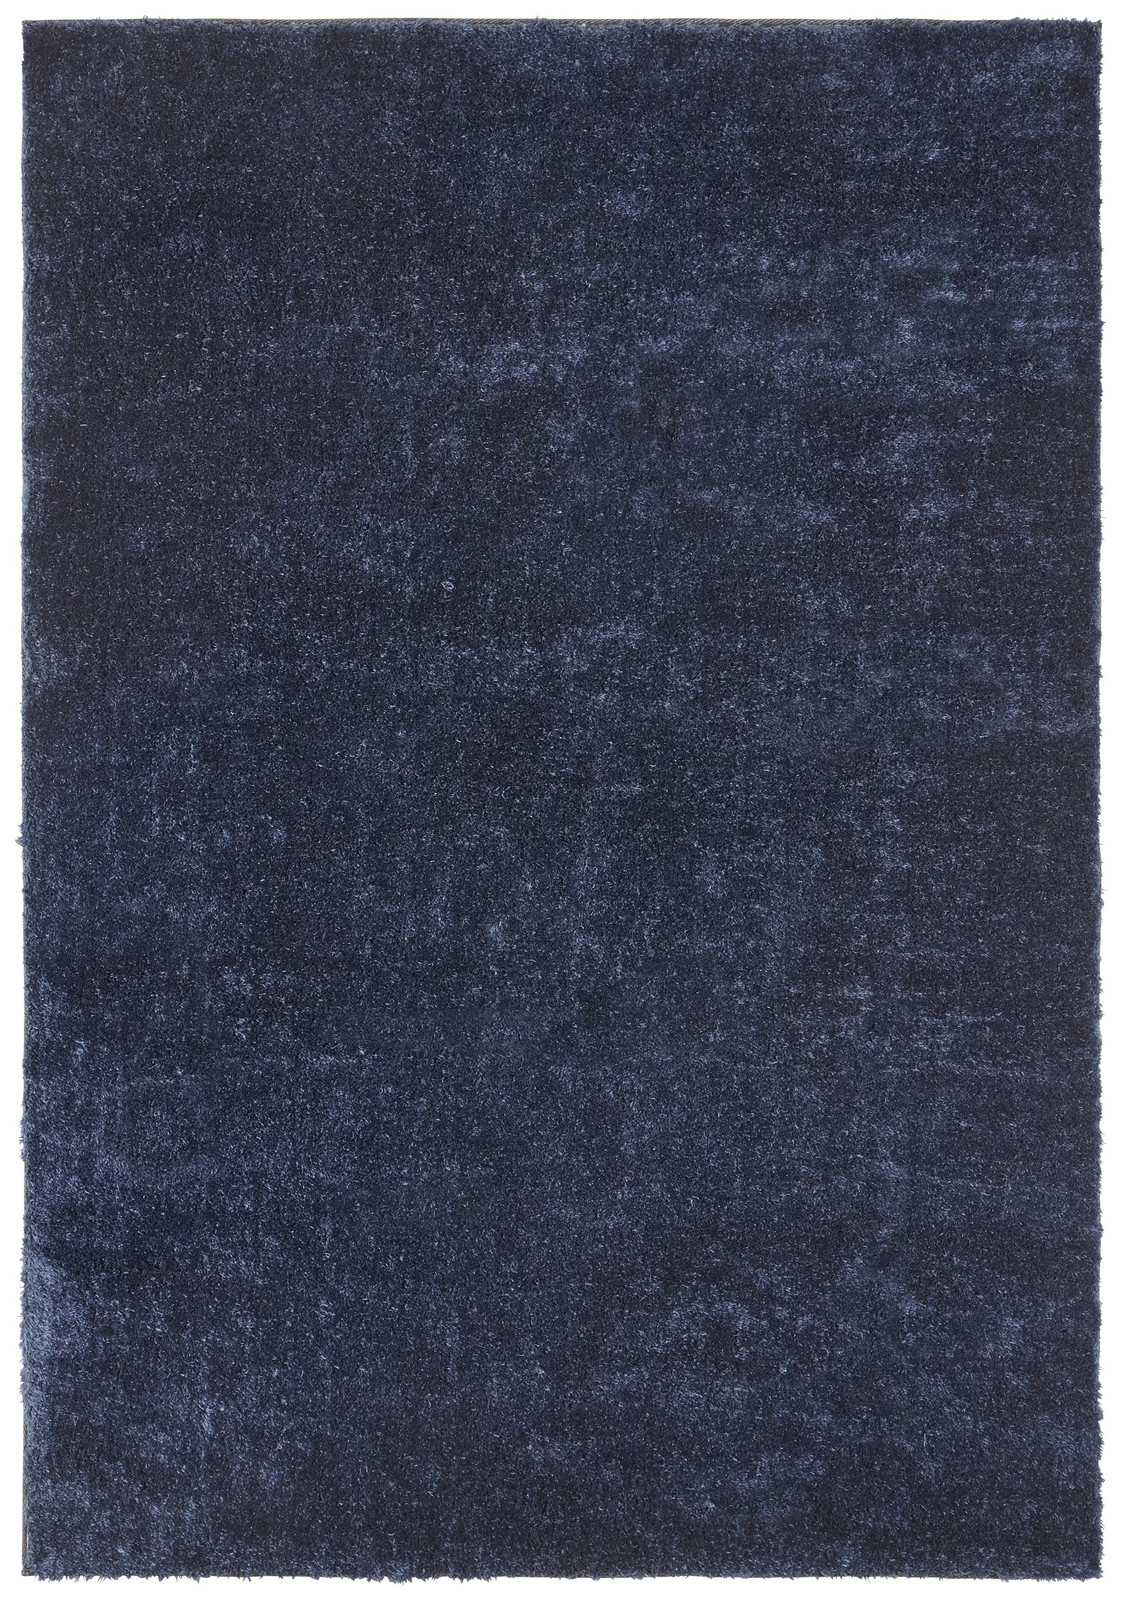 AKCE: 80x150 cm Ručně všívaný kusový koberec Mujkoberec Original 104196 - 80x150 cm Mujkoberec Original